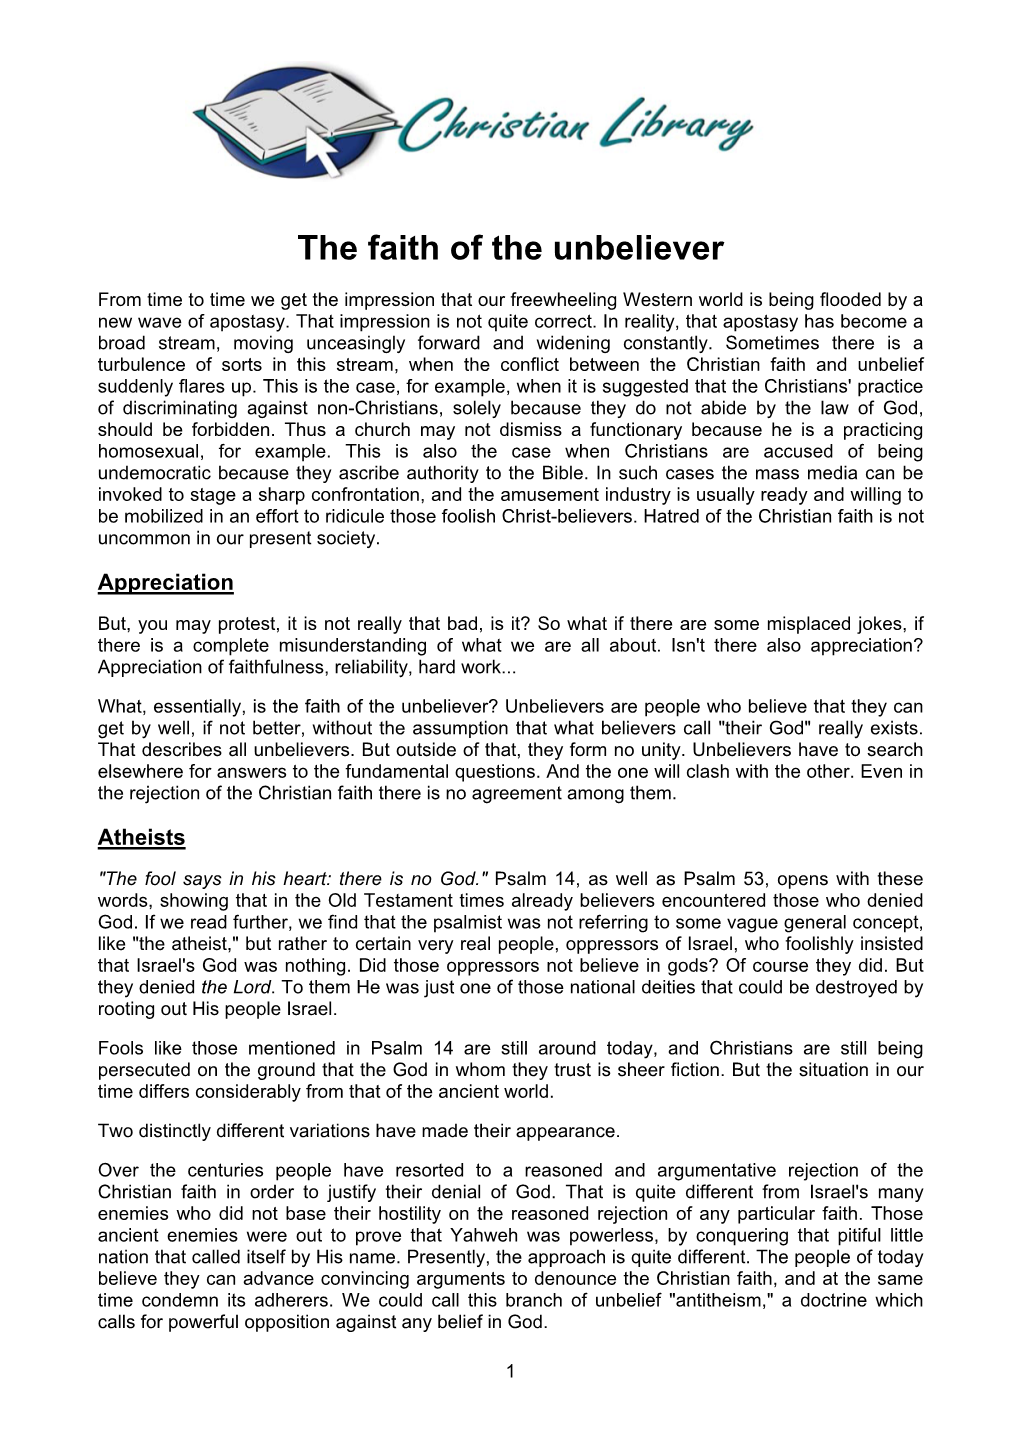 The Faith of the Unbeliever